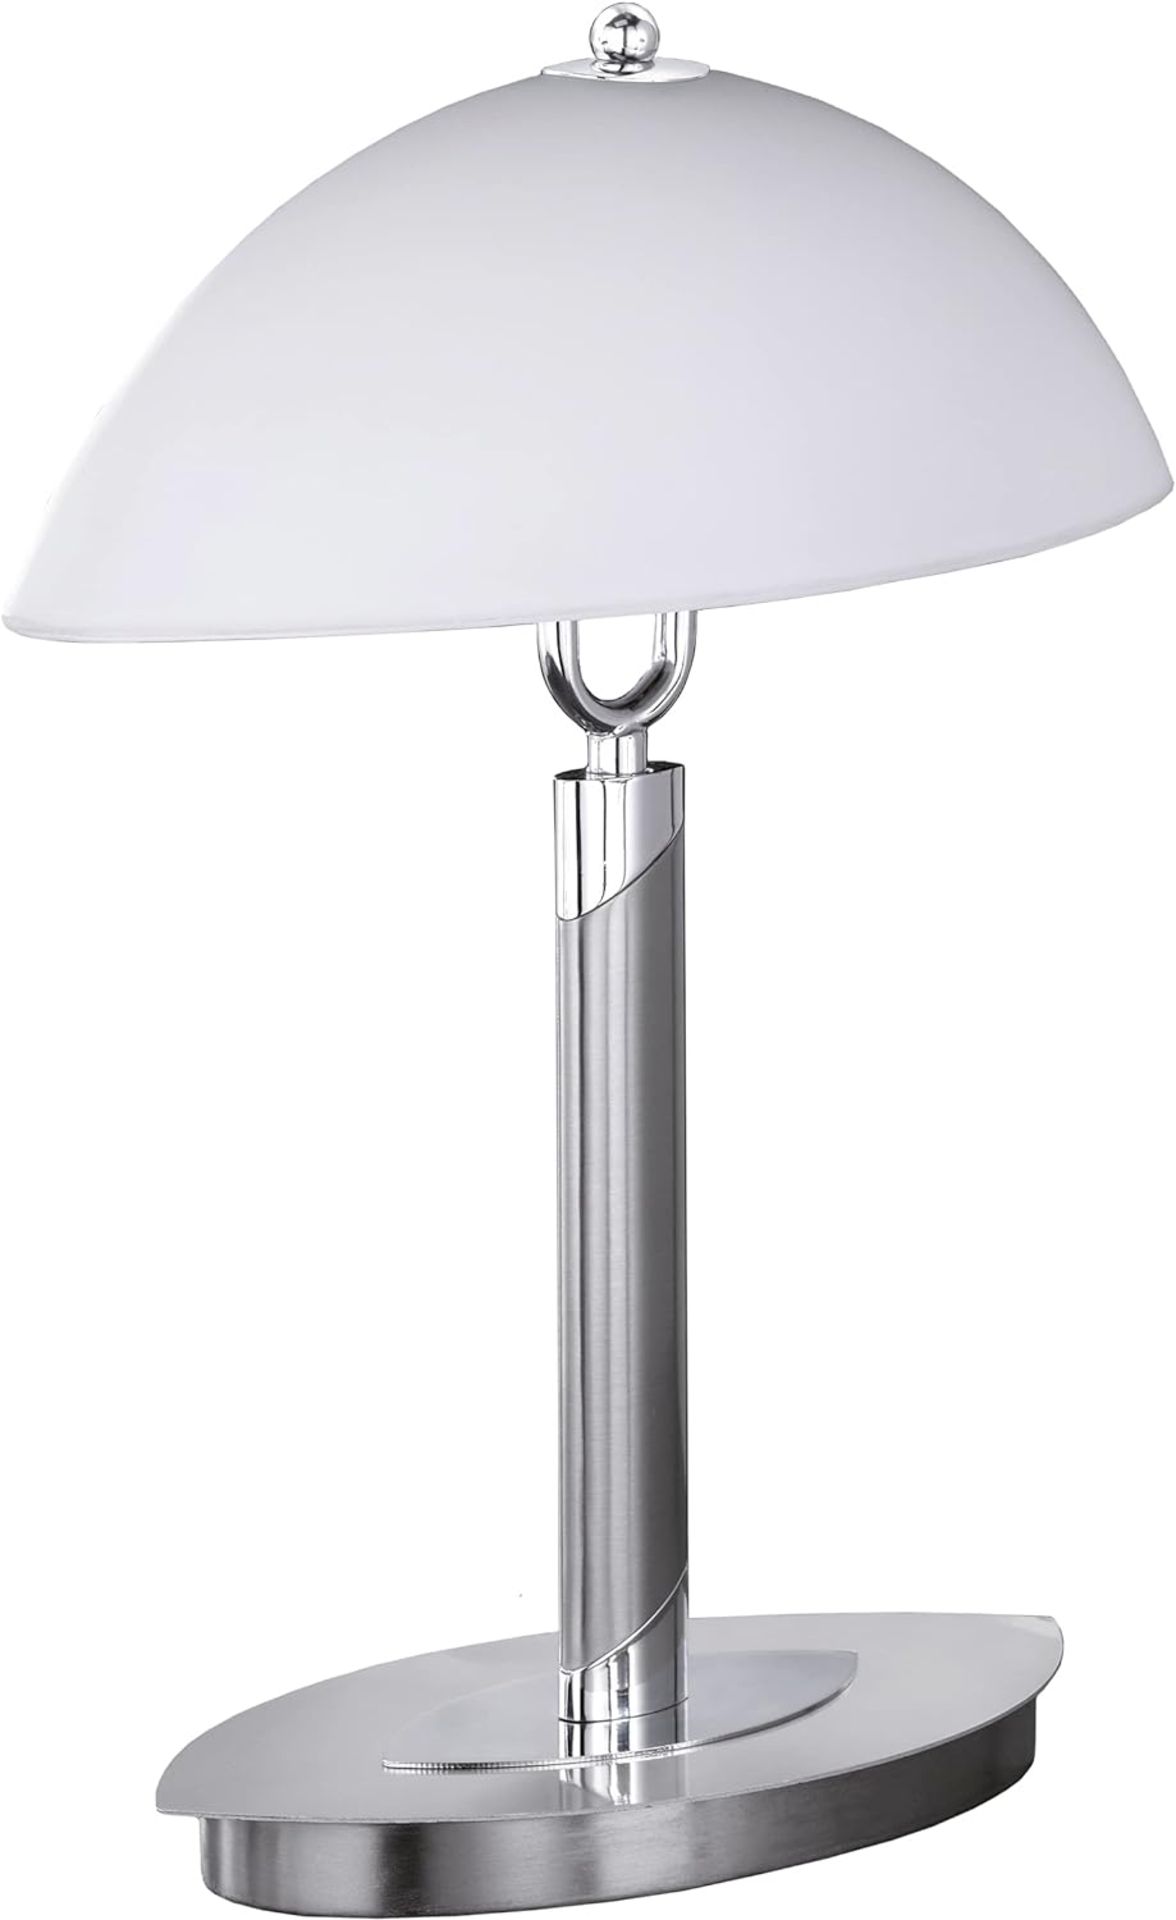 WIFI table lamp und Table Lamp 8112.02.64.0010, Nickel-matt